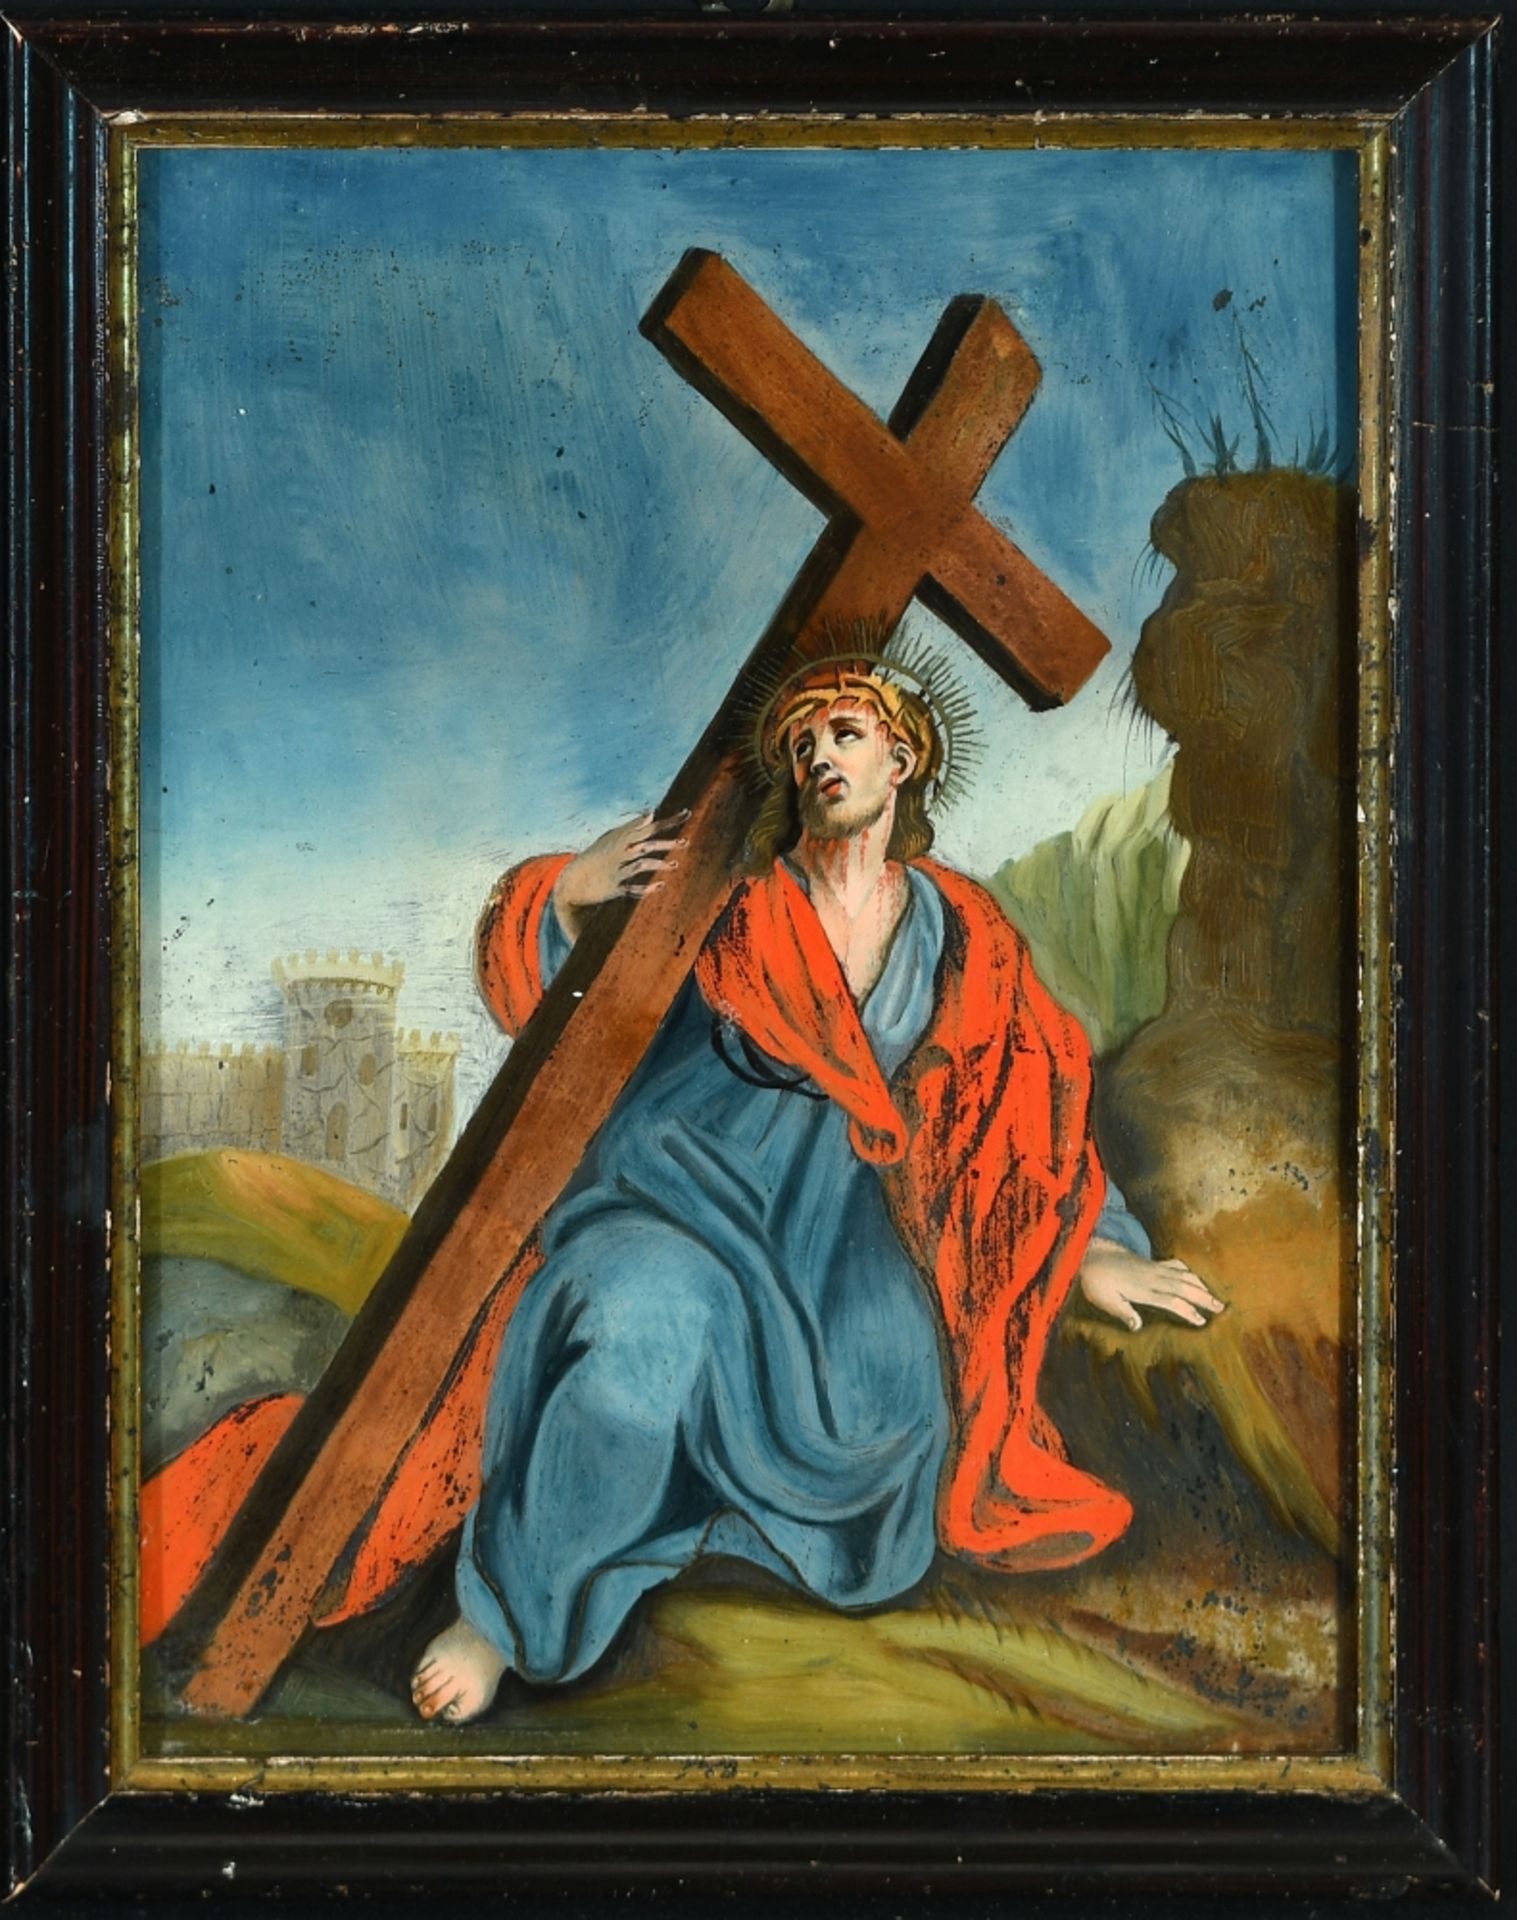 Hinterglasmalerei "Christus unterm Kreuz"